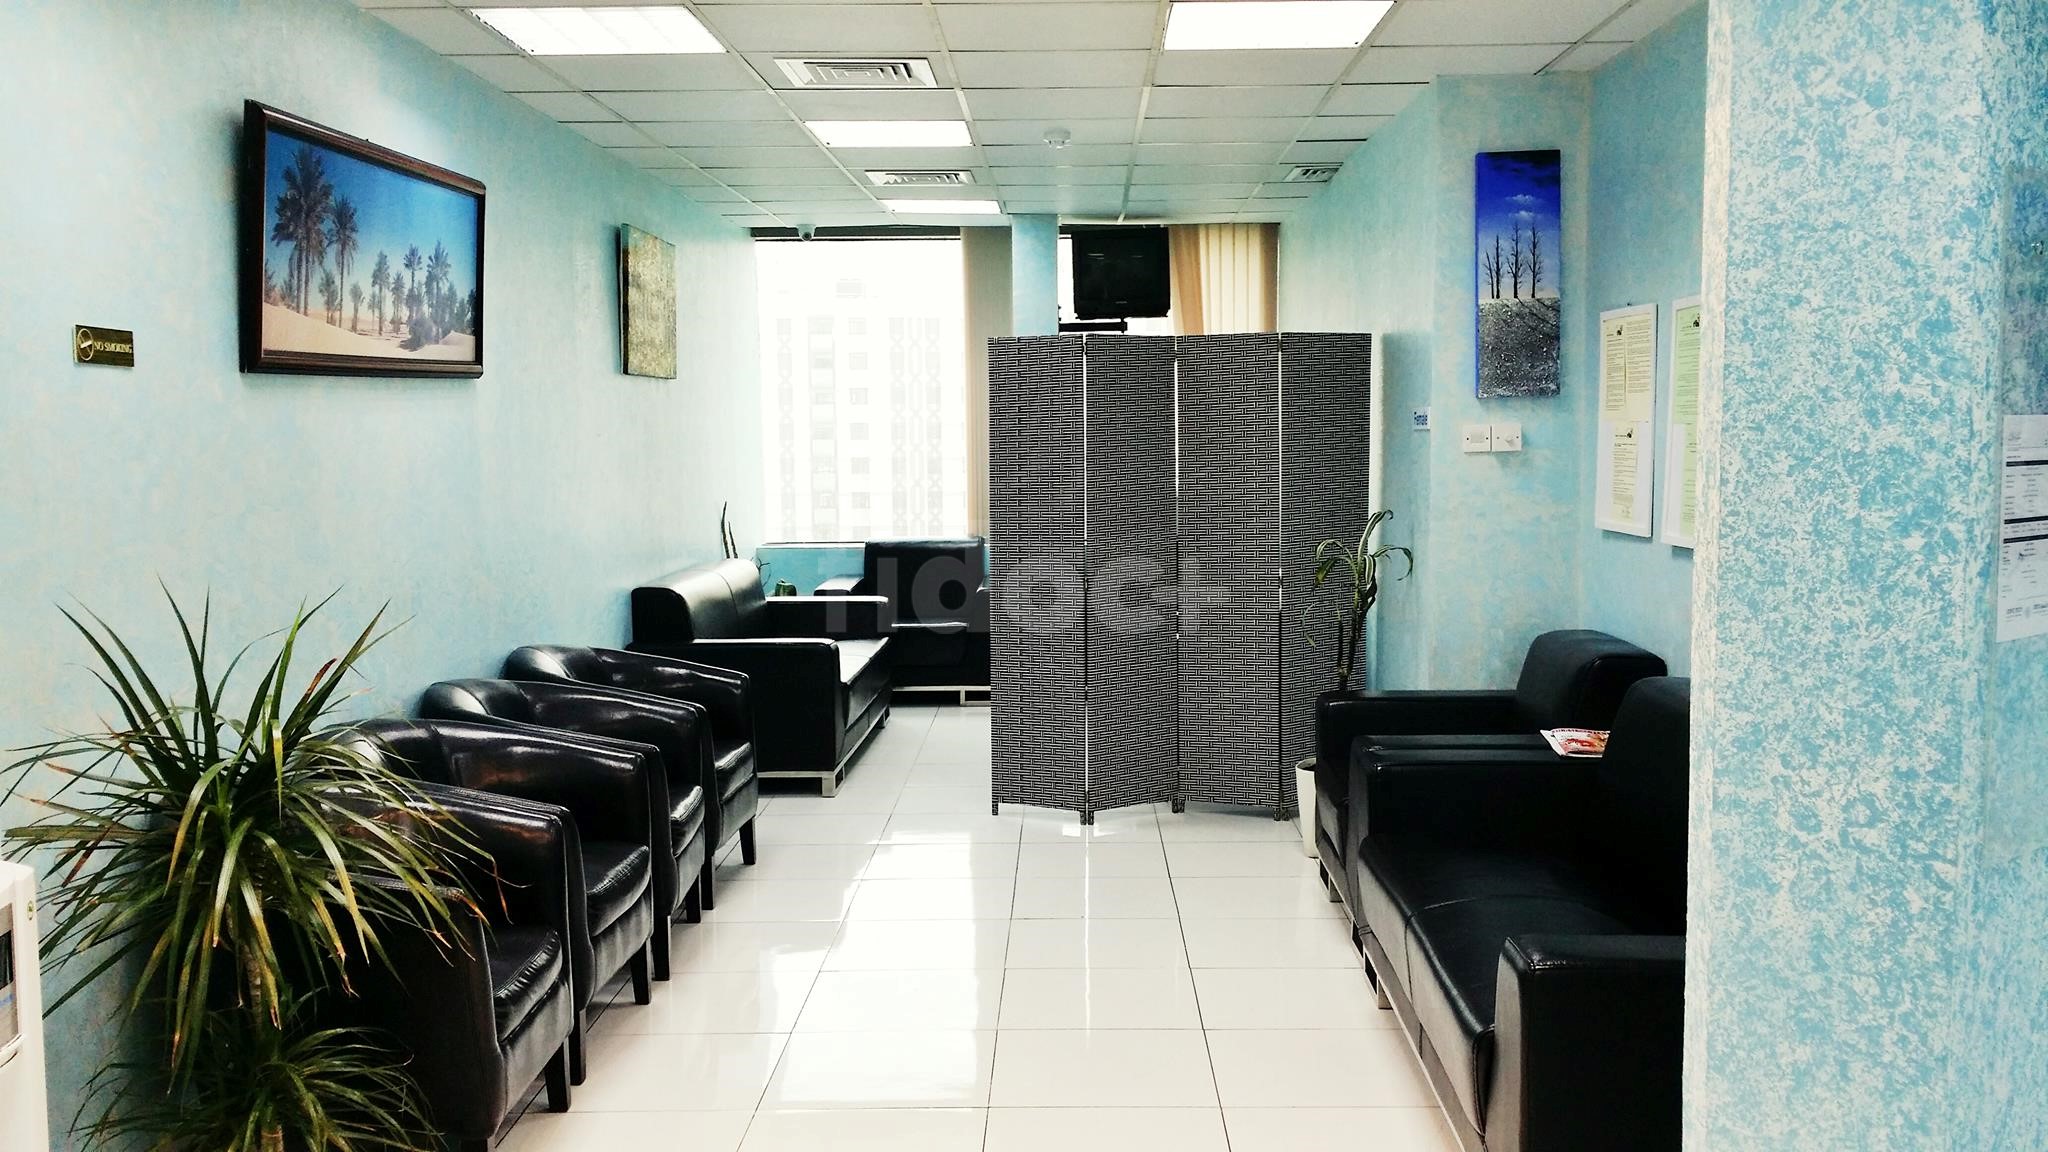 Ibn Hiyan Clinic, Dubai